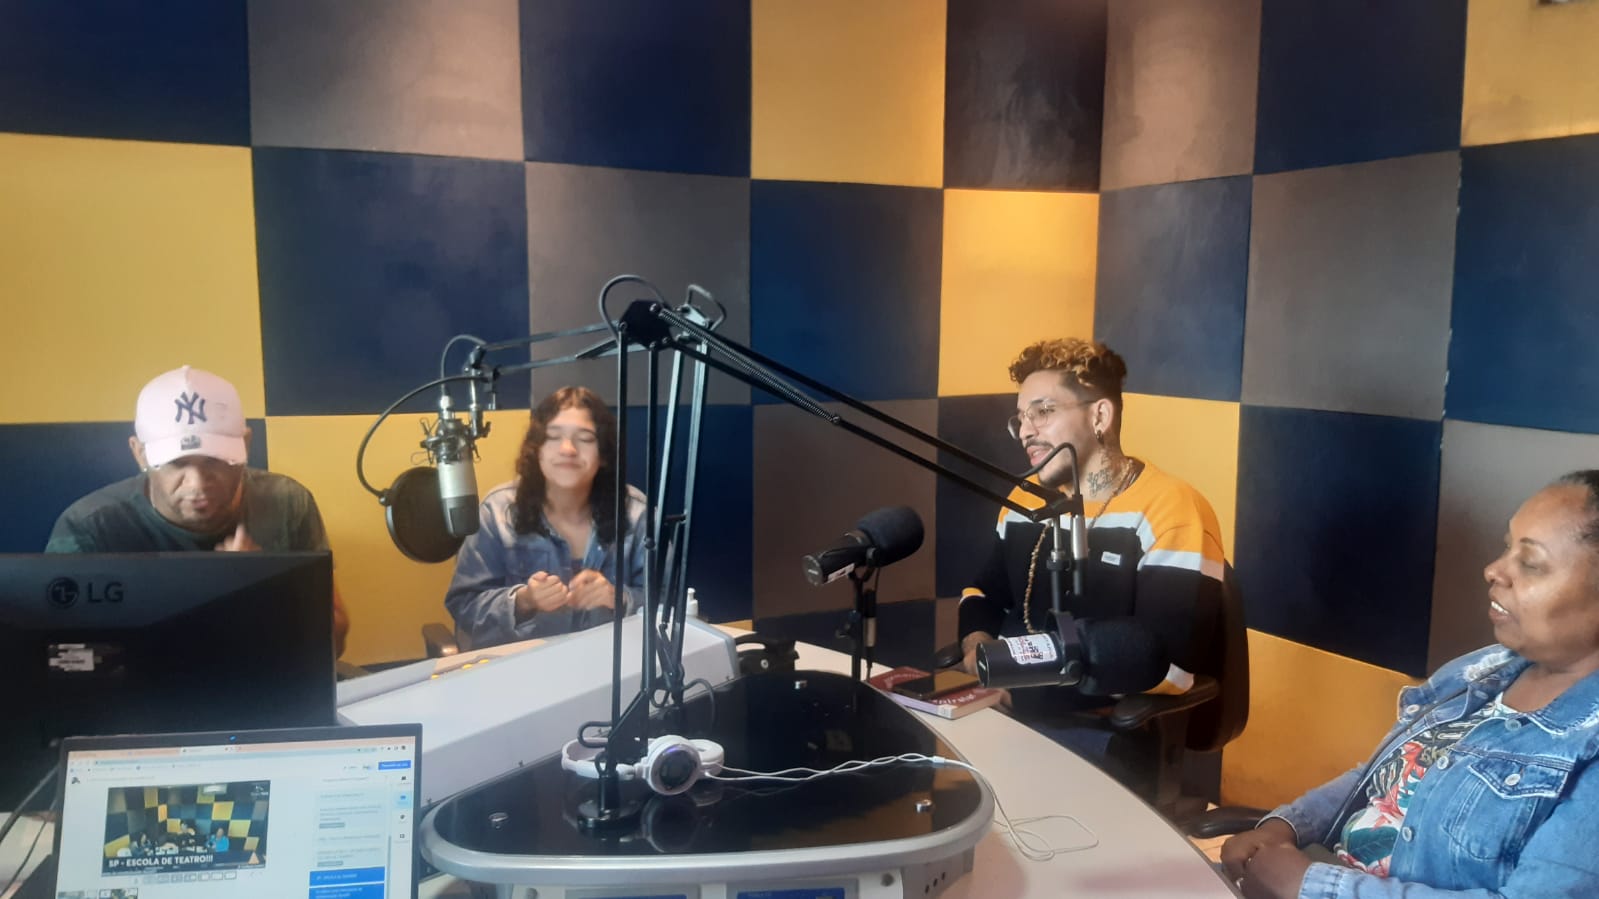 Foto colorida no estúdio da Rádio Comunitária Heliópolis, com João Martins e Mônica Madureiro, colaboradores da SP, e Ana, Regis, Genario e Waguininho, representantes da rádio e da Unas